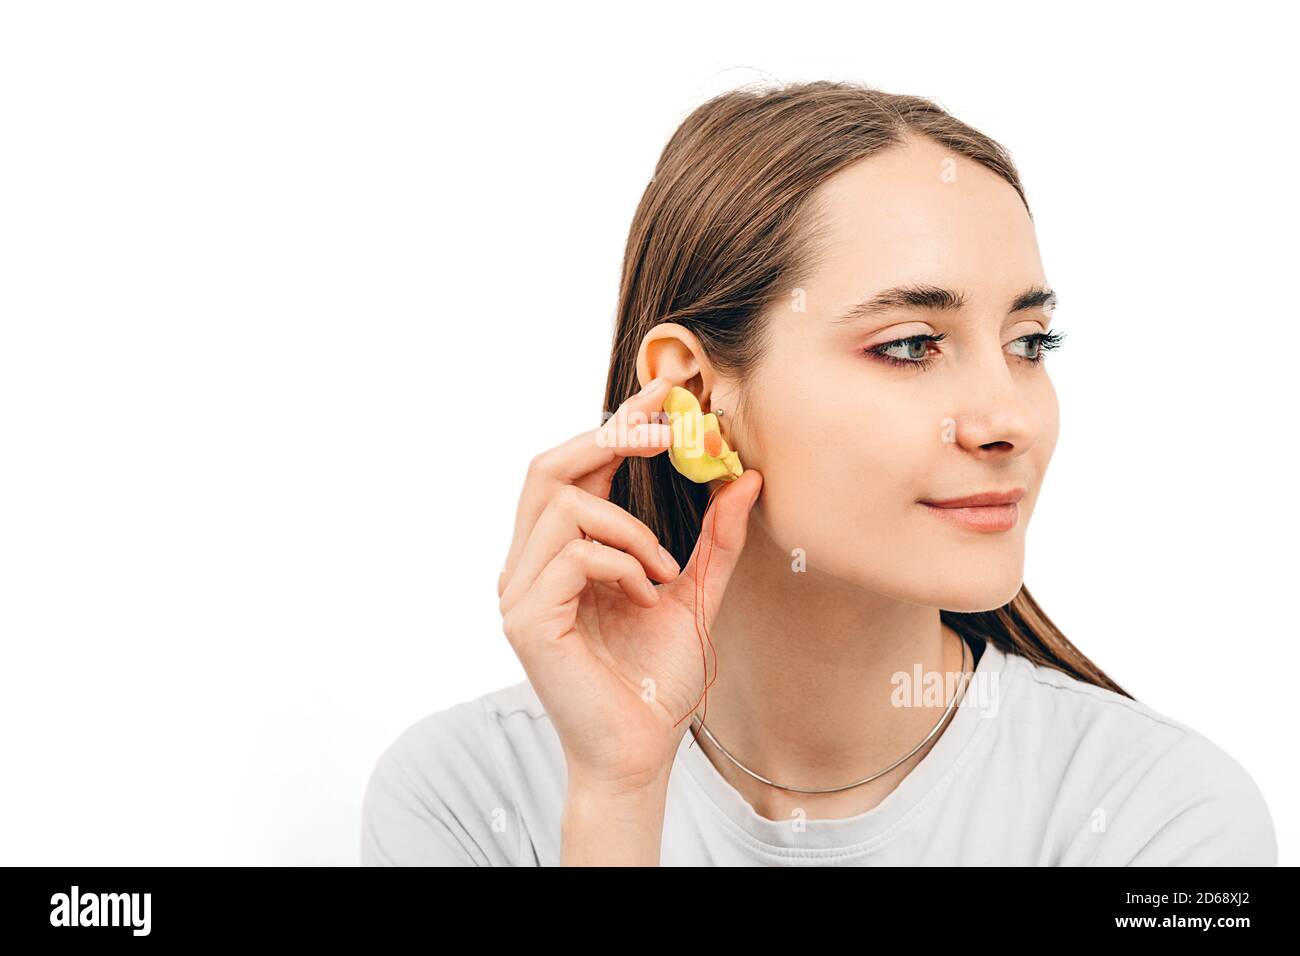 Tappi auricolari individuali per donne. Donna che tiene il tappo auricolare personalizzato vicino all'orecchio, su sfondo bianco Foto Stock